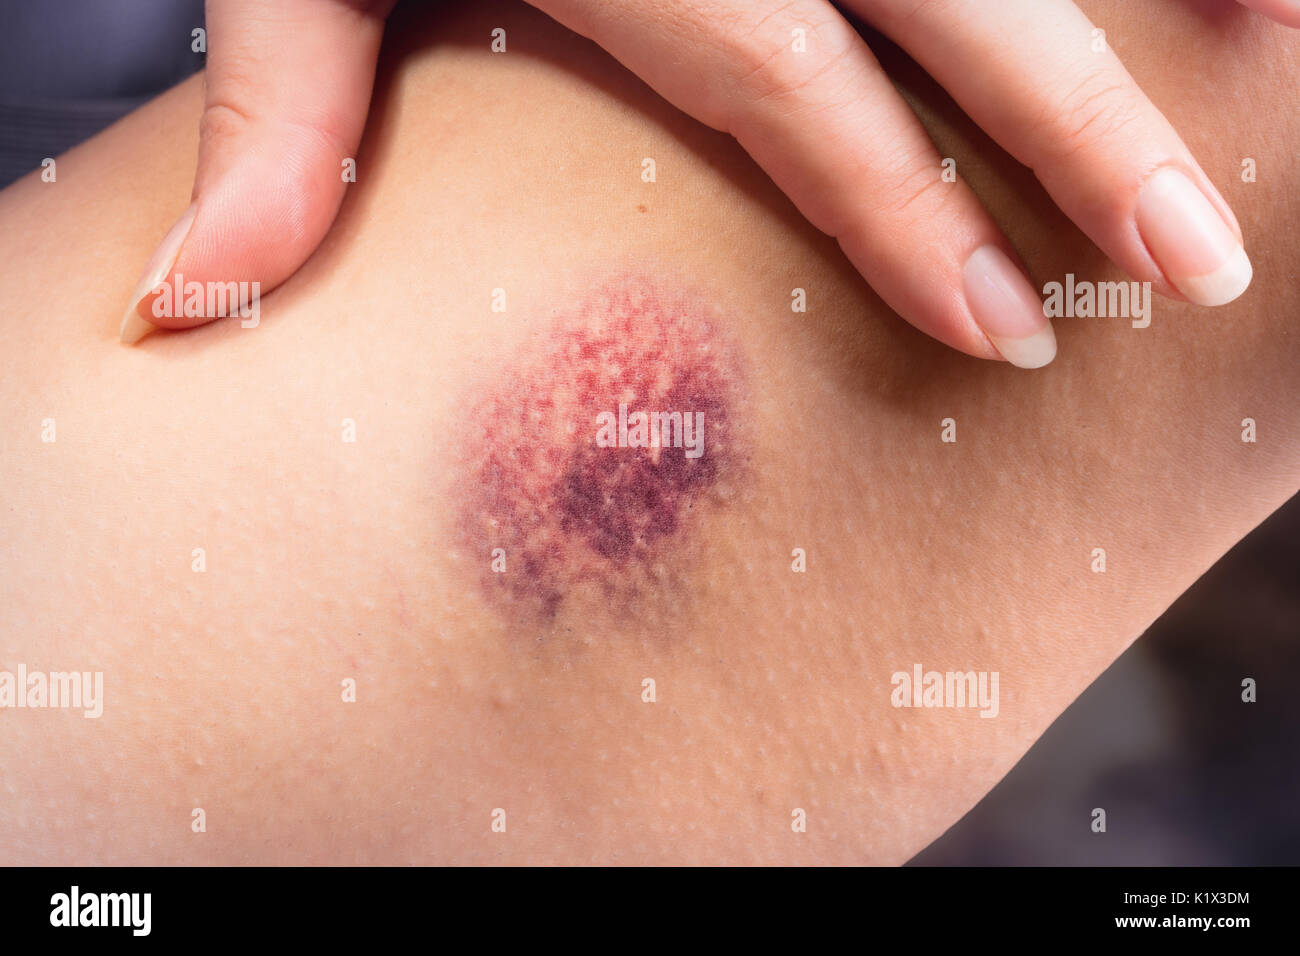 Hematoma en la mujer las piernas - concepto de abuso y violencia Foto de stock